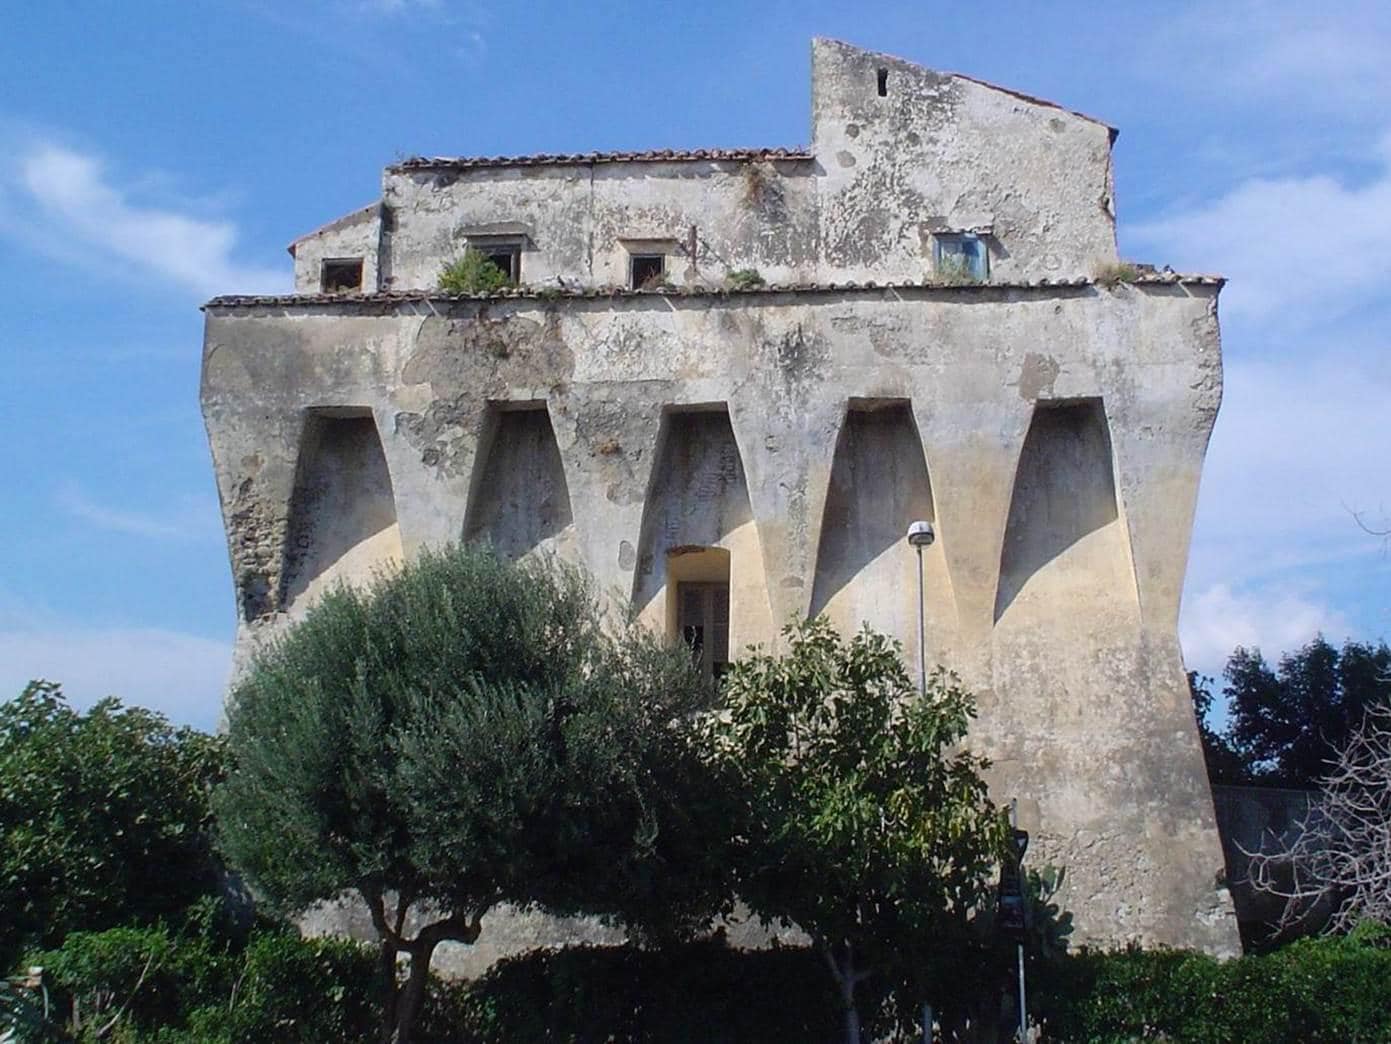 Gratis af te halen in Italië: eigen kasteel voor de ambitieuze klusser